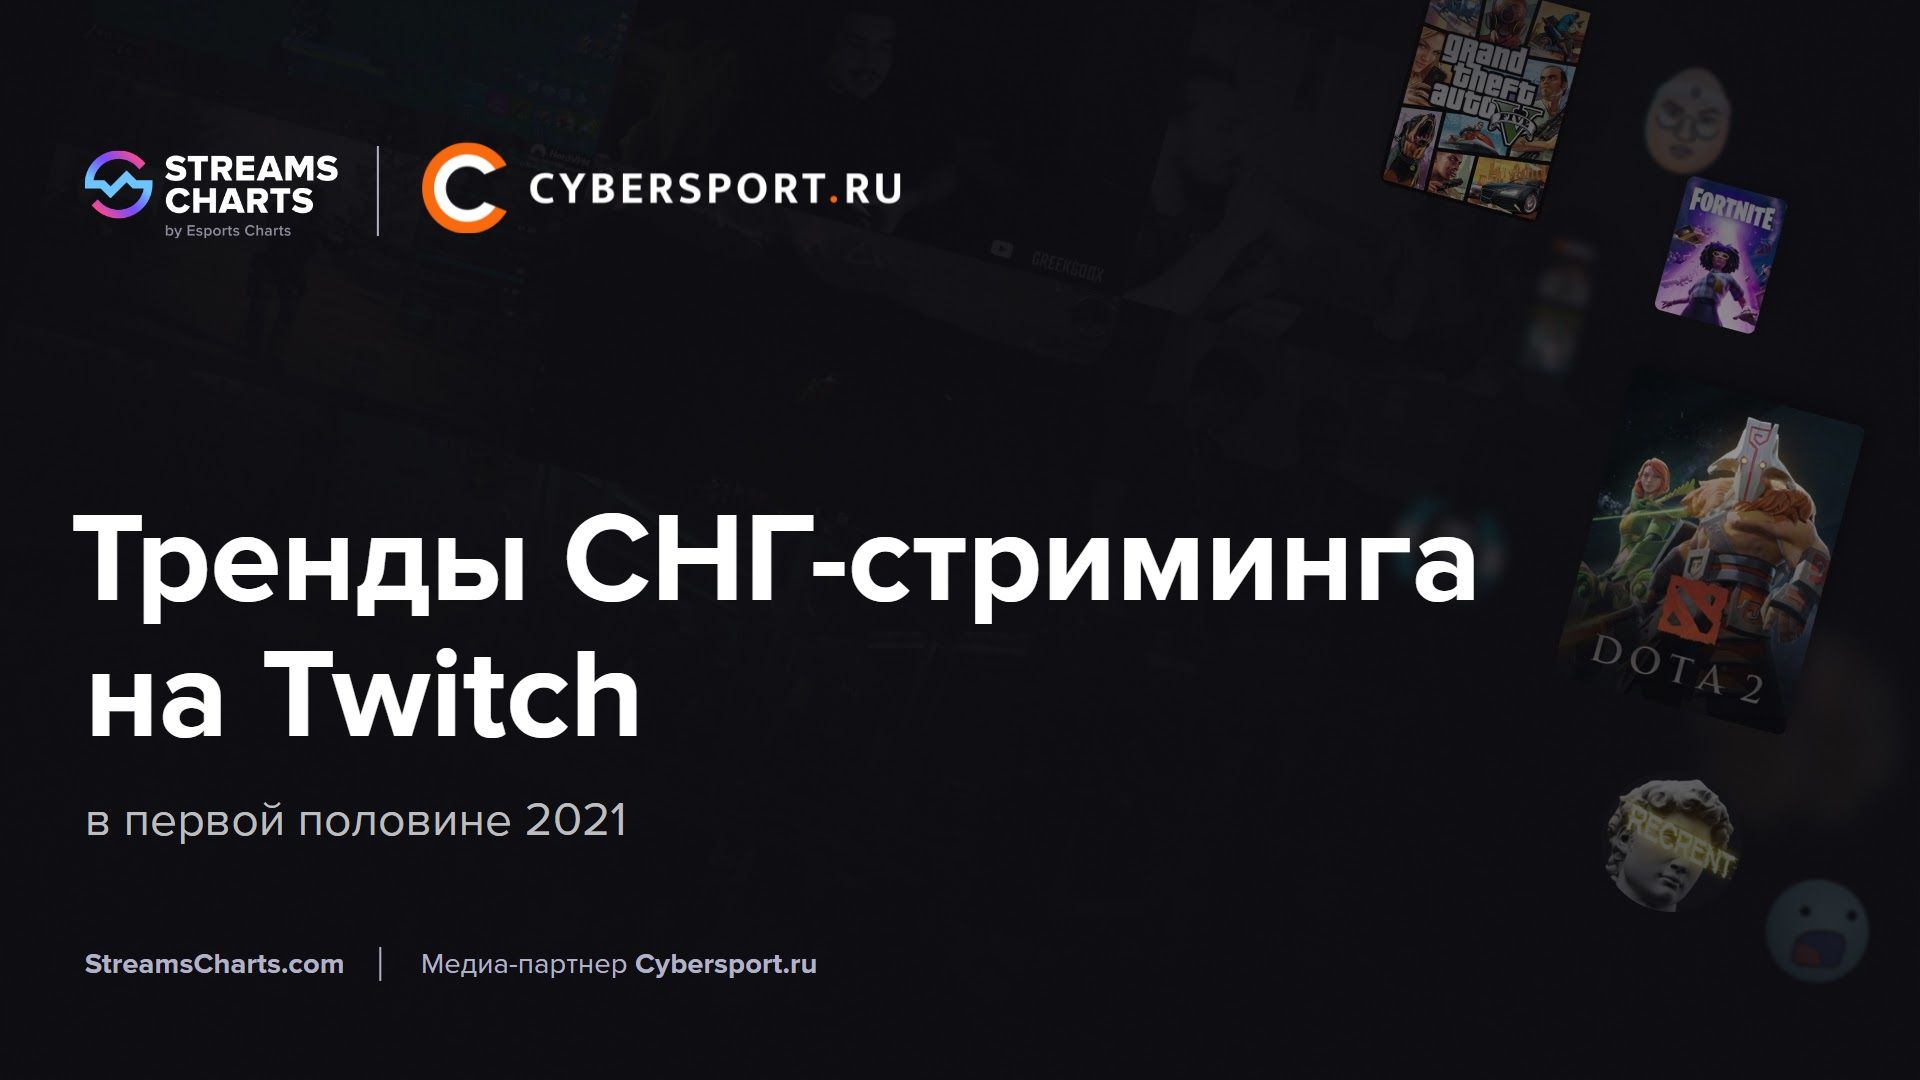 Кликни на картинку, чтобы ознакомиться с самым подробным отчётом по русскоязычному сегменту Twitch